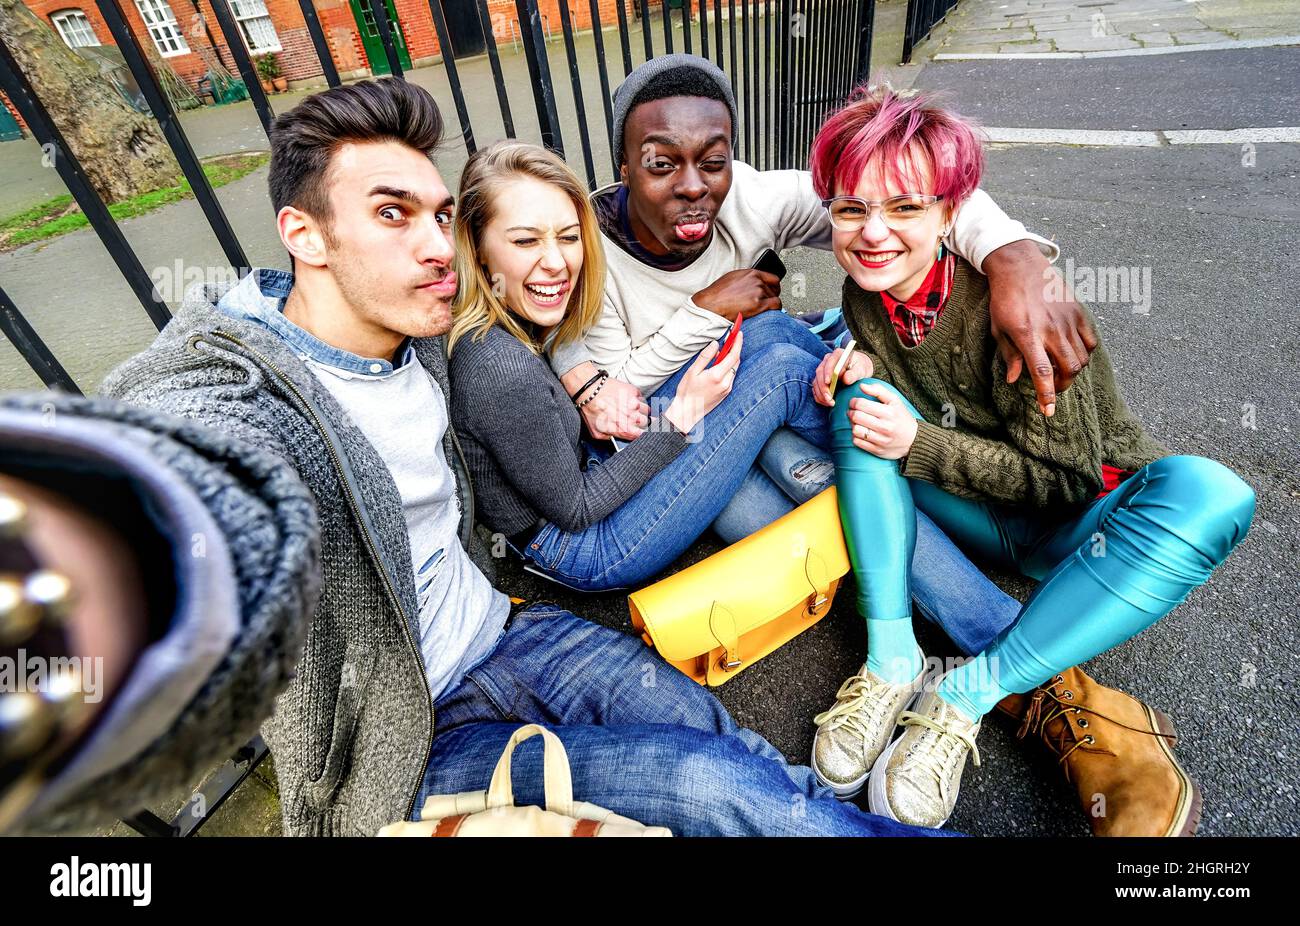 Multikulturelle Hipster-Freunde beim Selfie in Shoreditch auf europareise - Junge Menschen süchtig nach Geschichten in sozialen Netzwerken Stockfoto